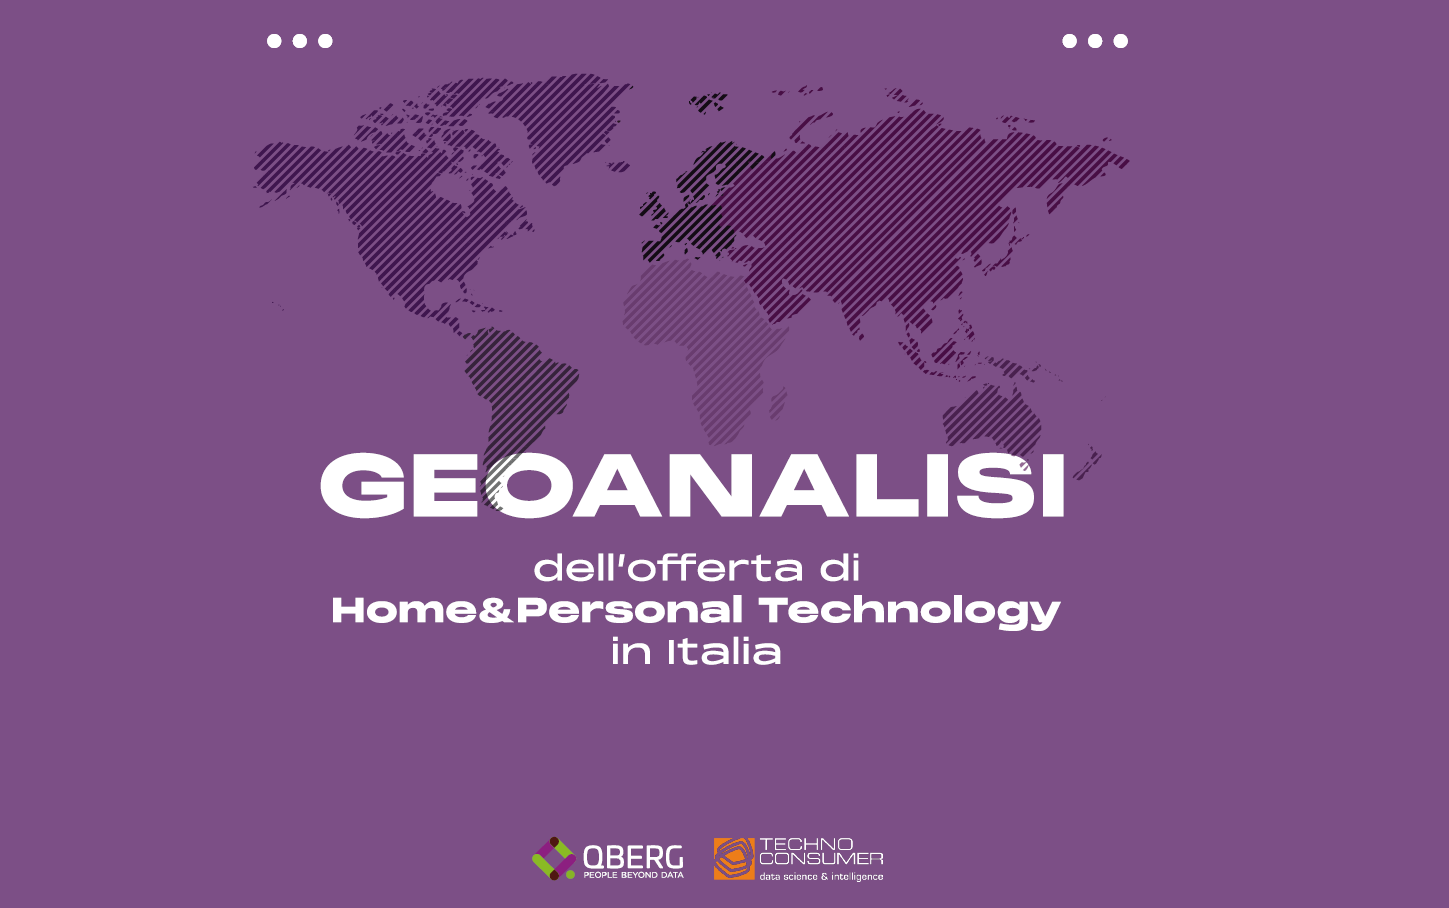 Qberg: Geoanalisi dell’offerta di Home&Personal Technology in Italia